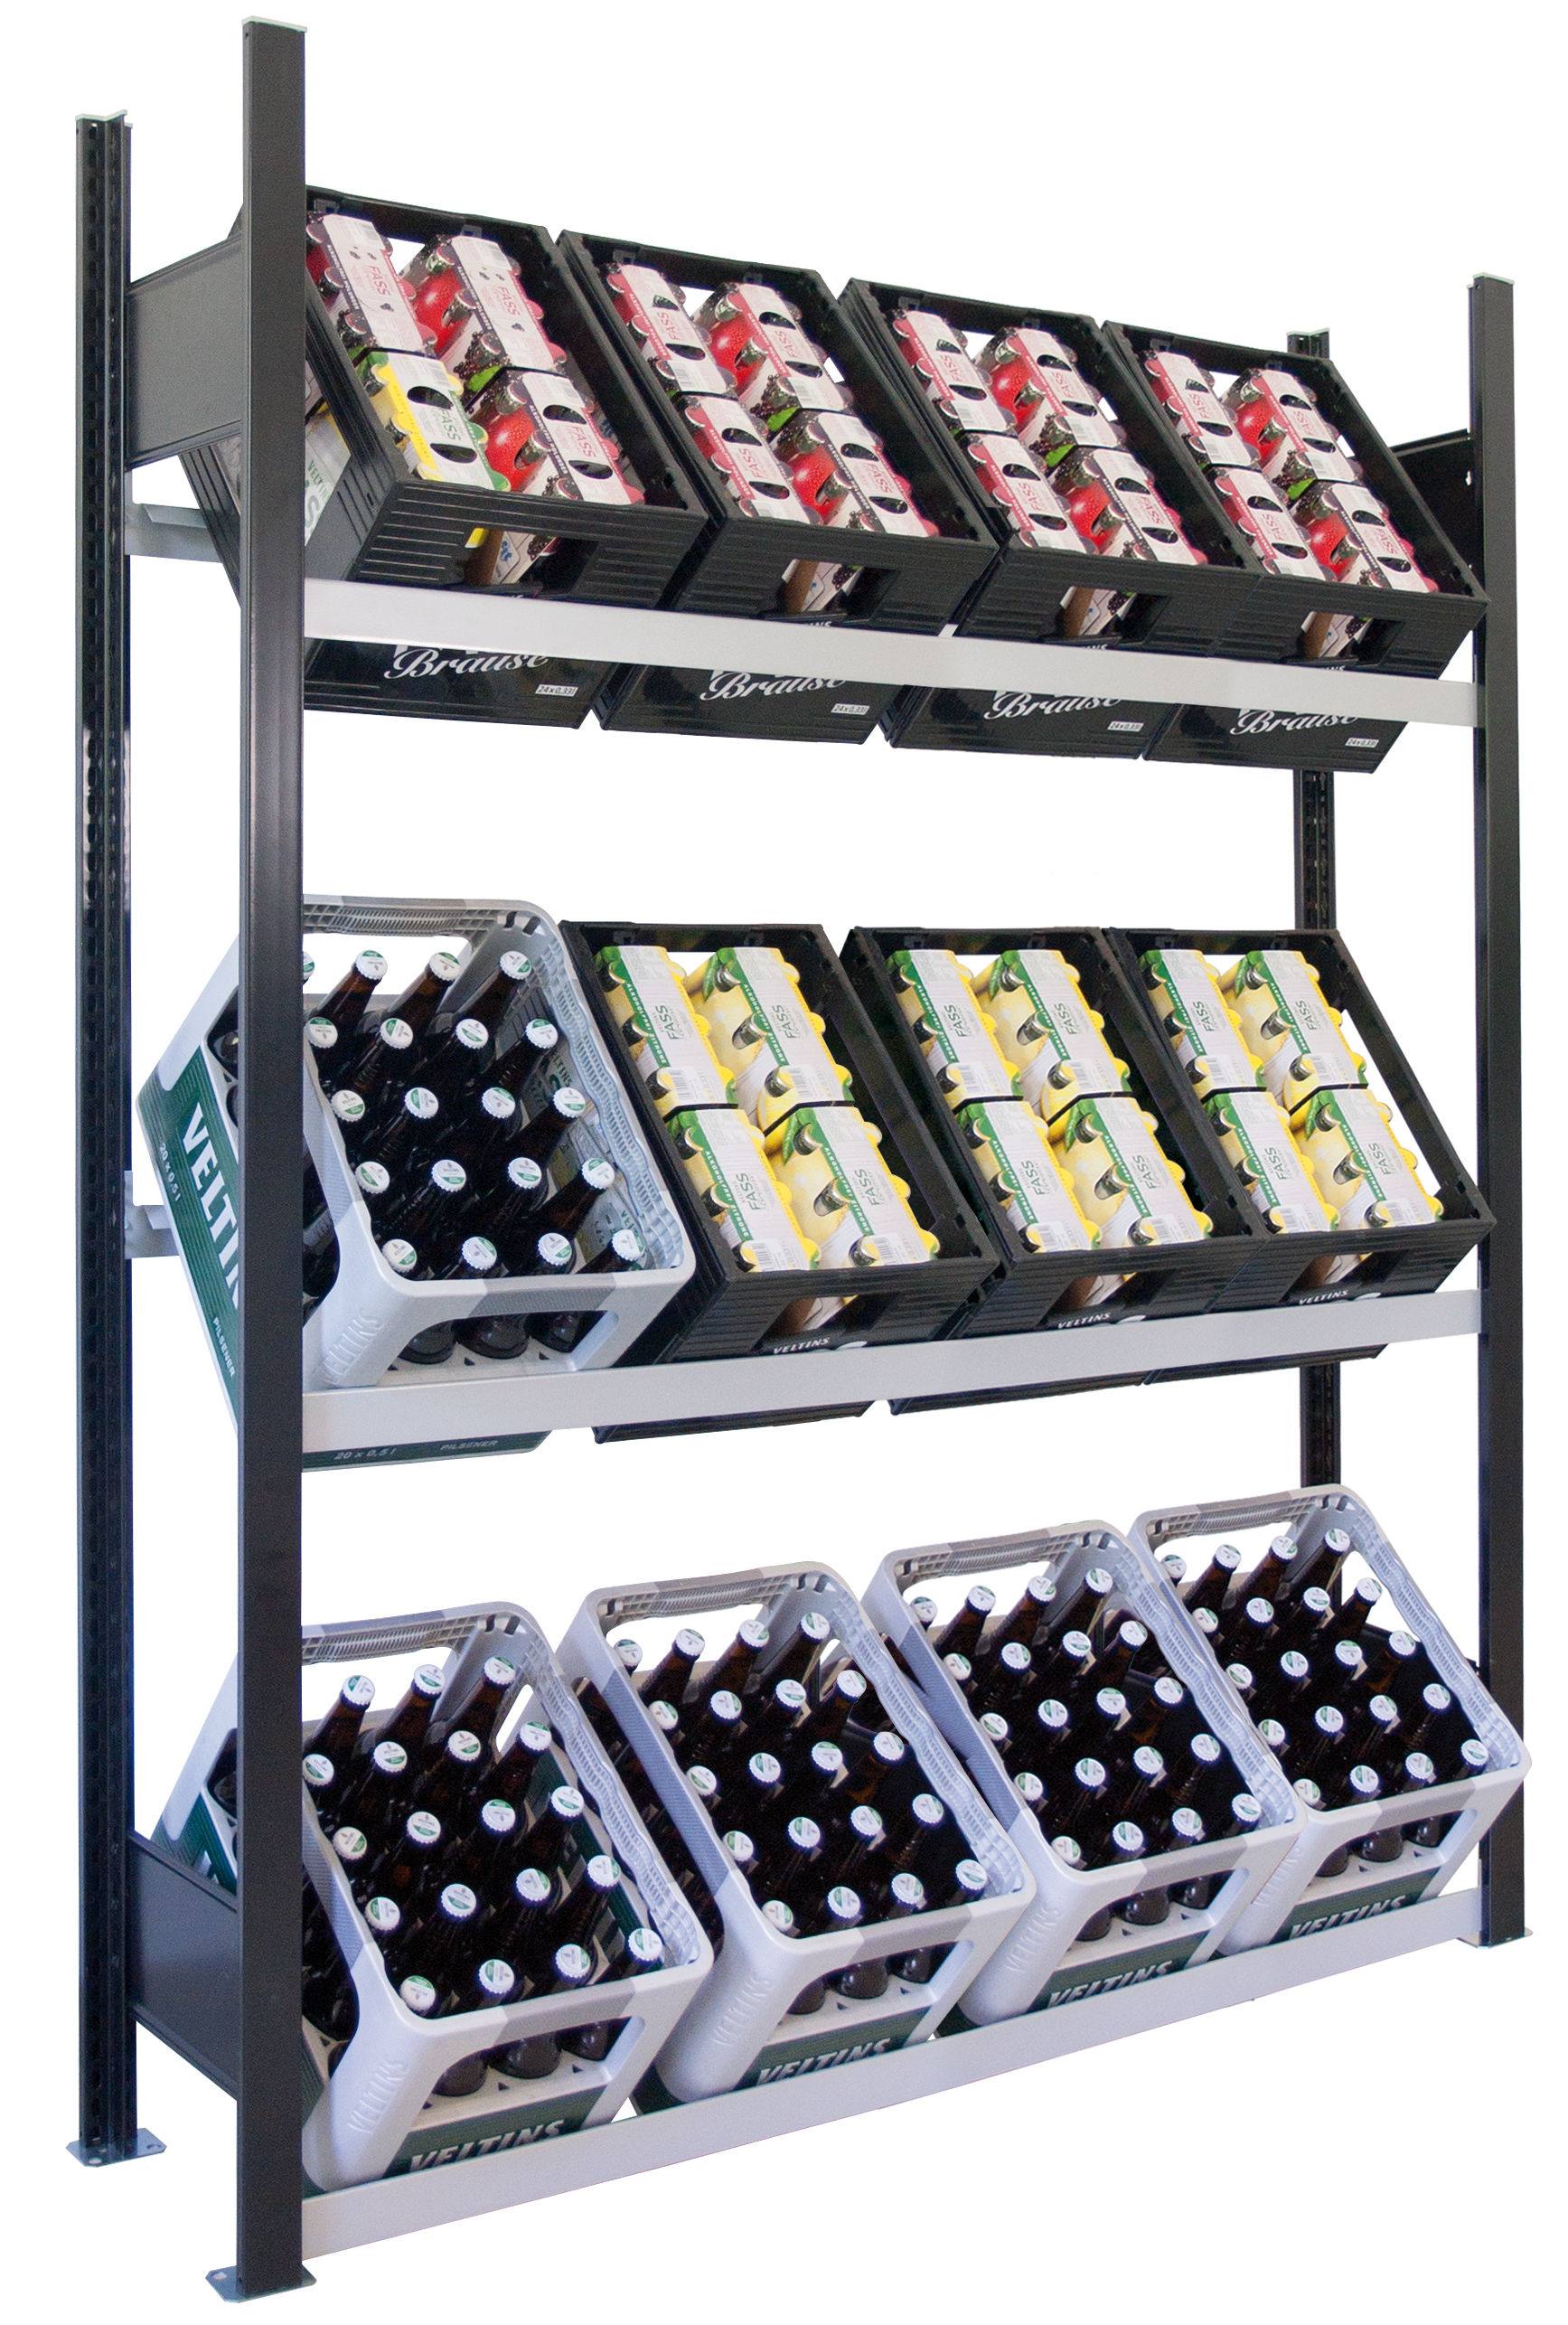 Getränkekistenregal für bis zu 12 Kisten, 180x130x30 cm (HxBxT), Traglast pro Ebene 60 Kg, schwarz-silber